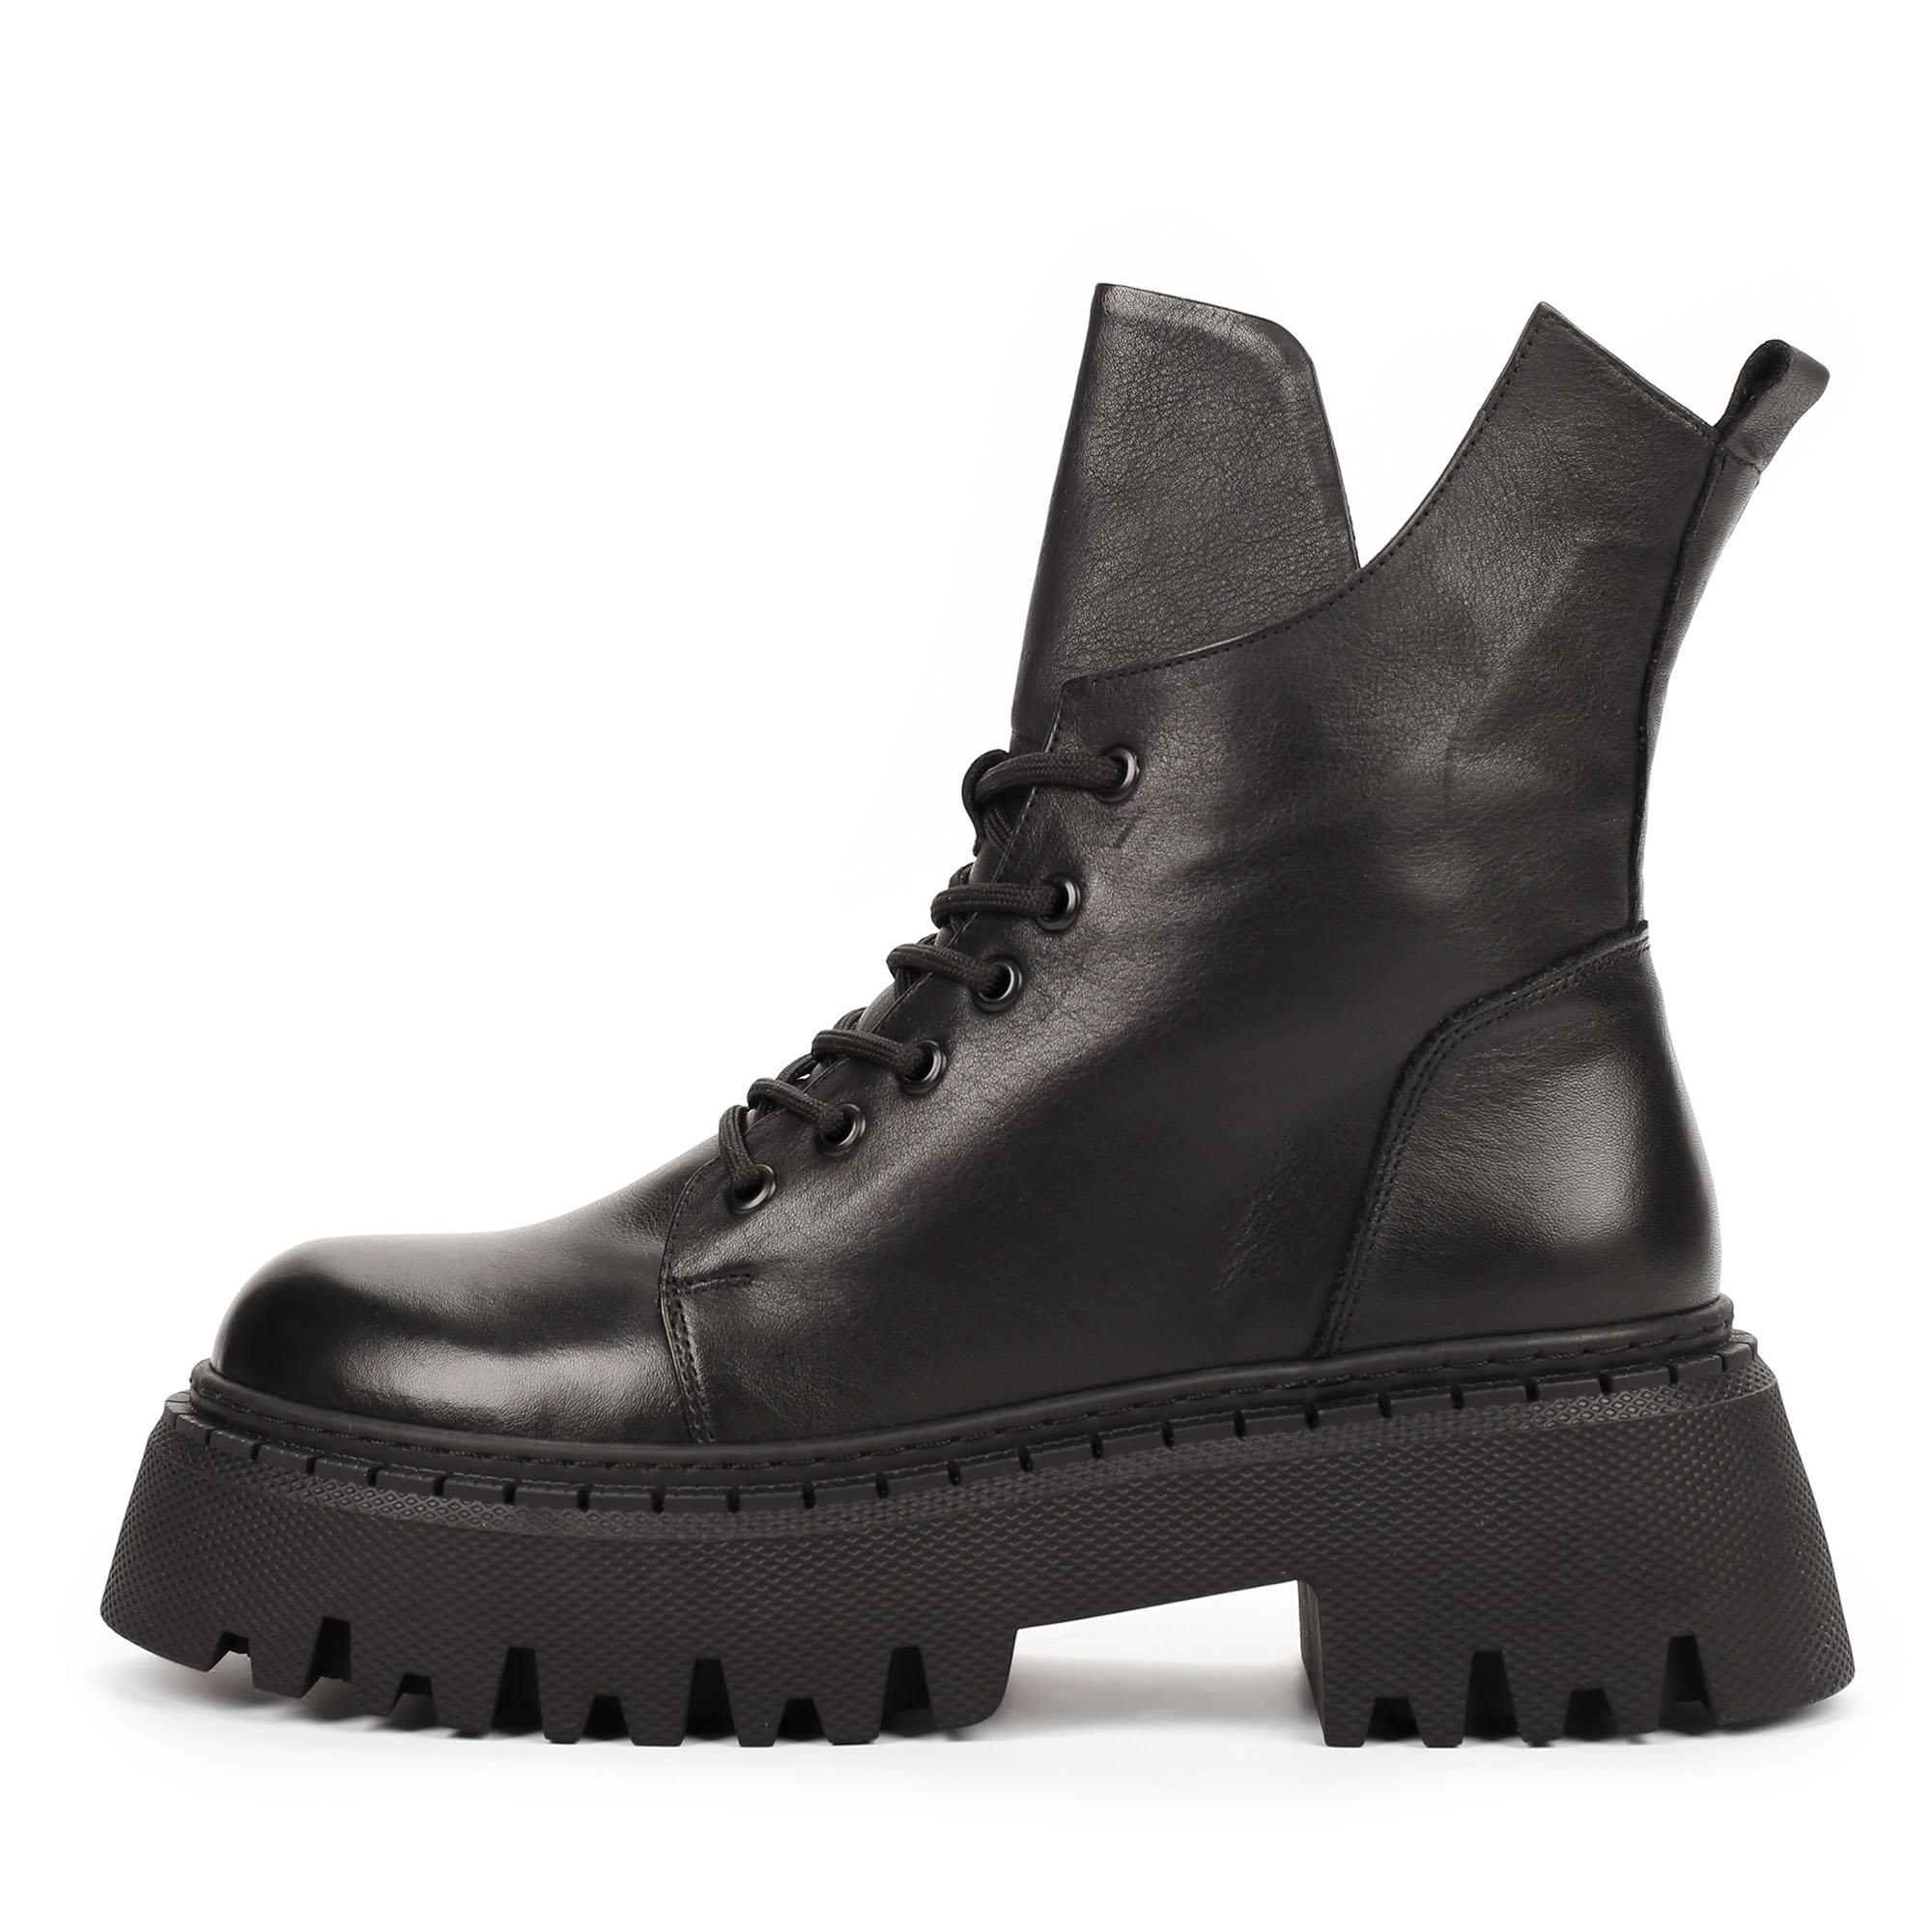 Ботинки Thomas Munz 506-156A-2102, цвет черный, размер 40